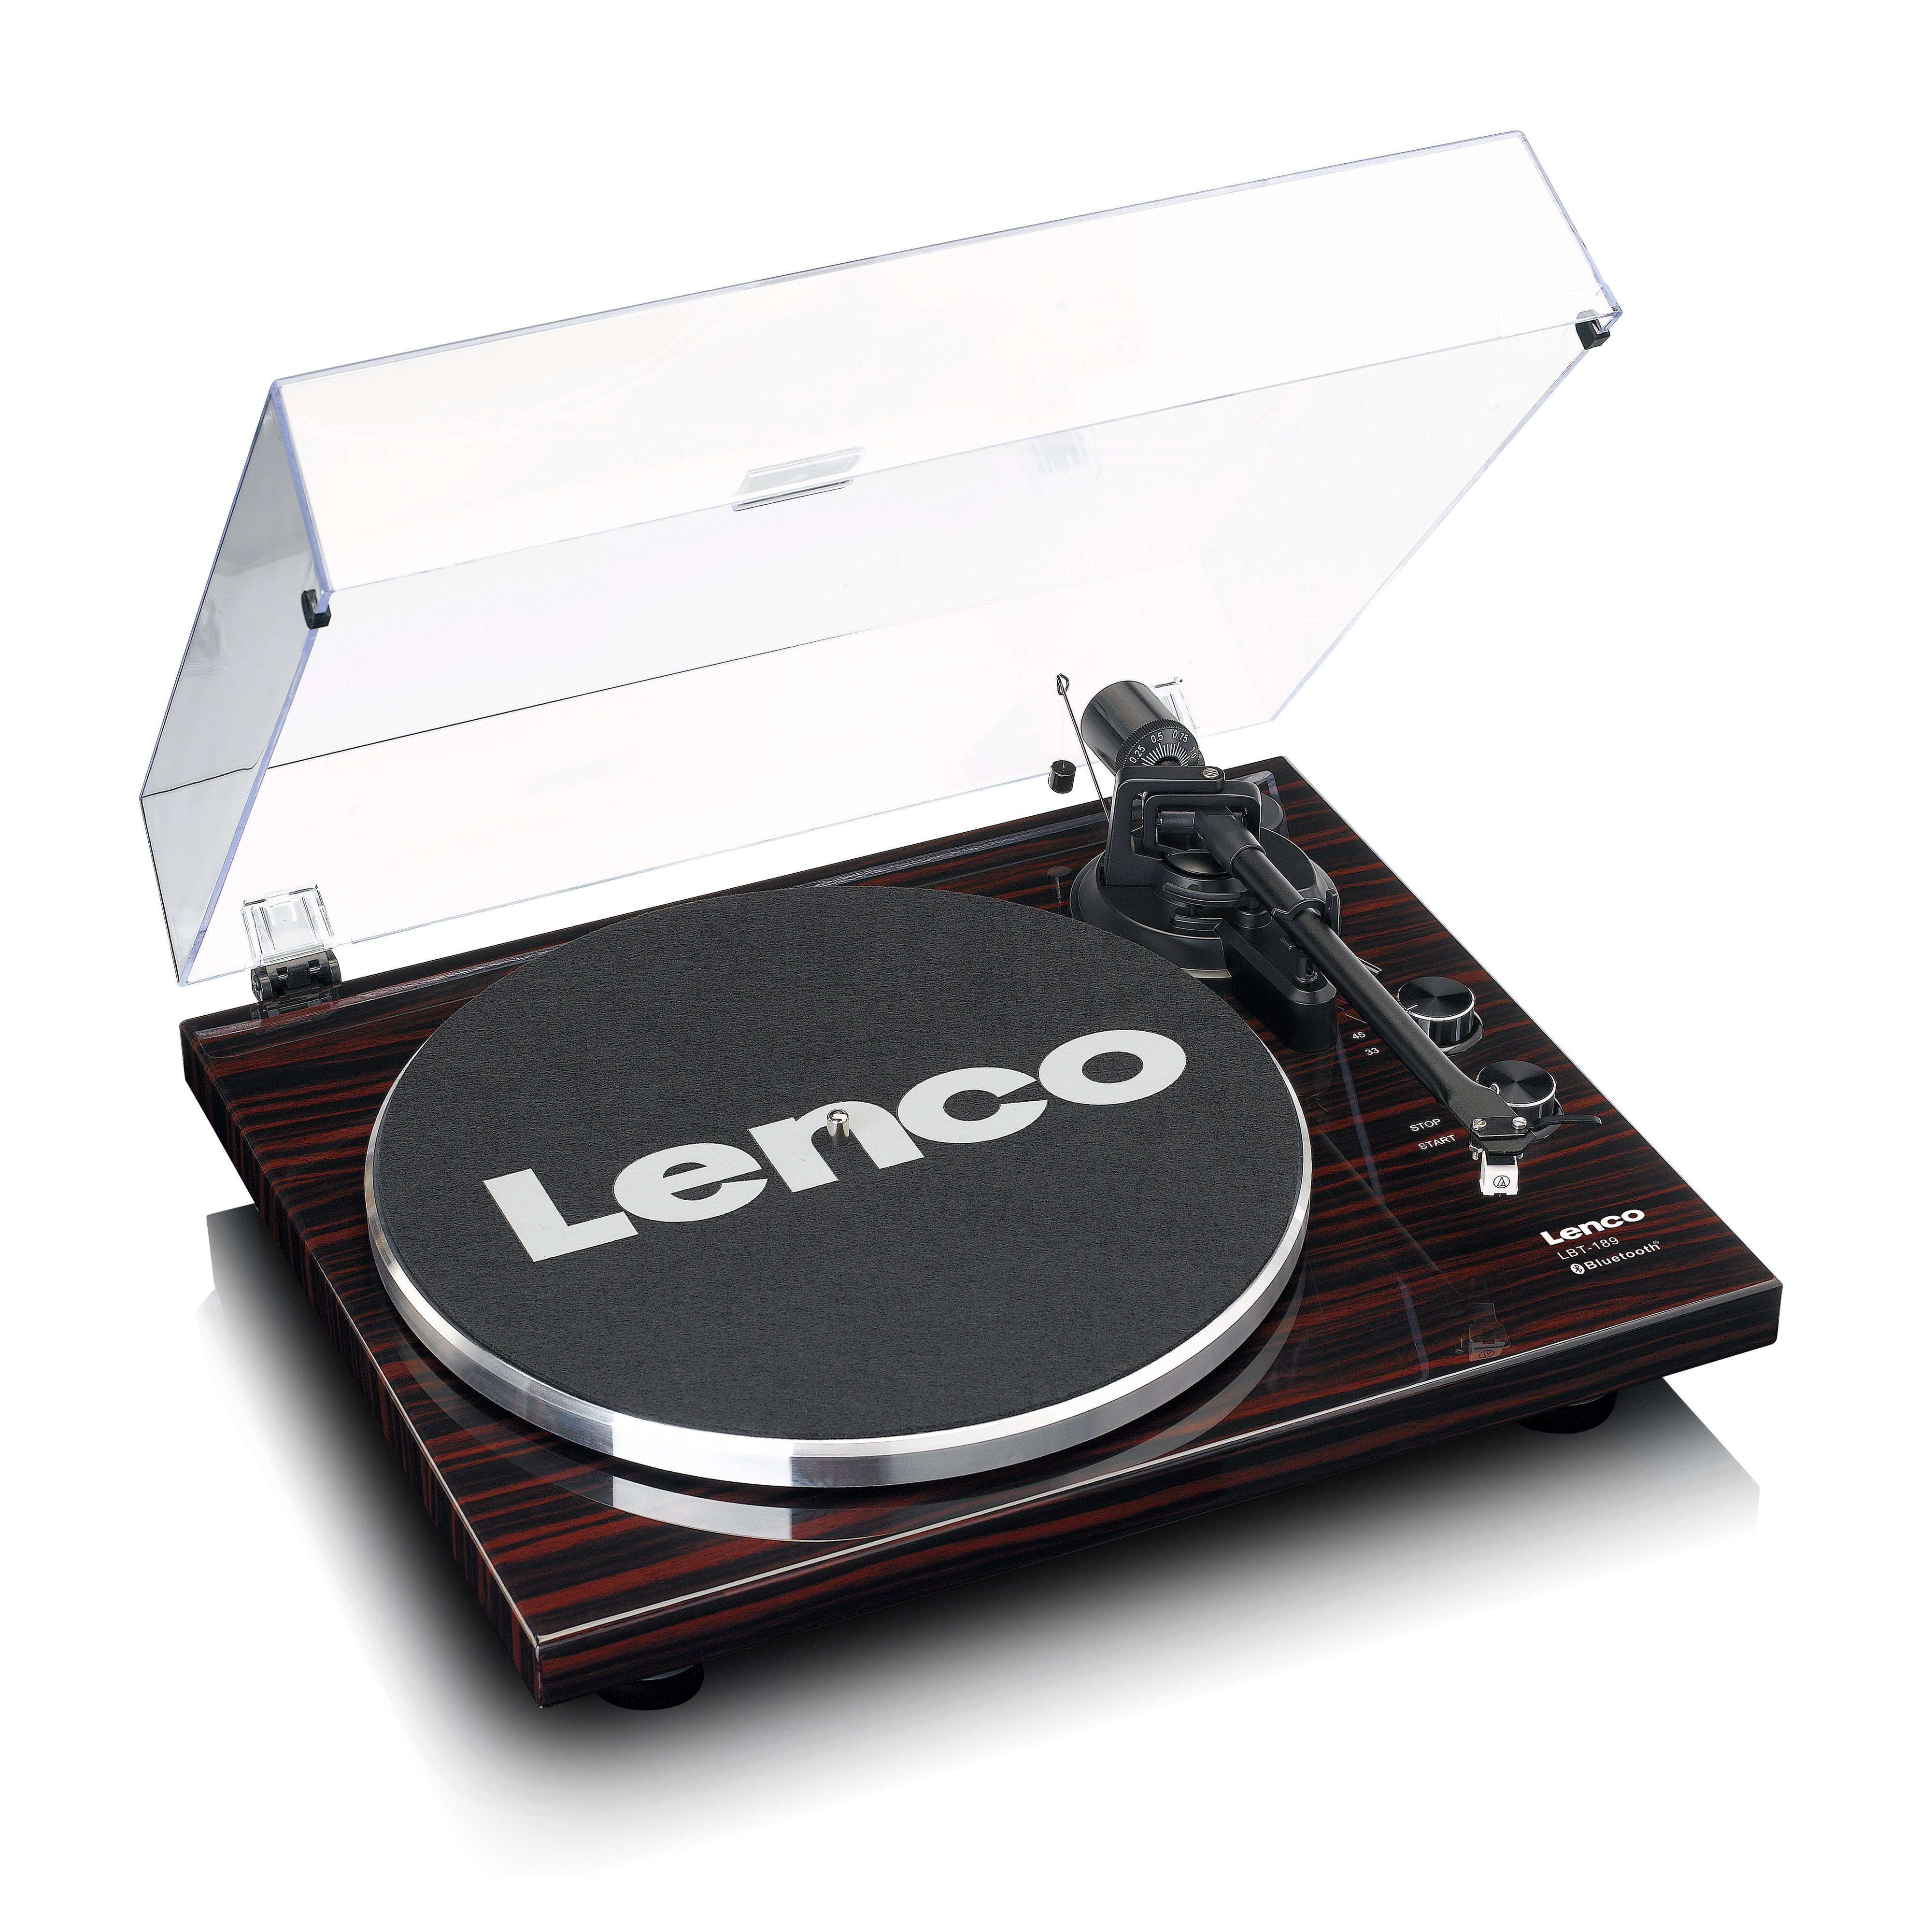 Lenco LBT-189WA Plattenspieler (Riemenantrieb, Bluetooh), USB-Anschluss für  PC-Verbindung zur Umwandlung von Vinyl in MP3